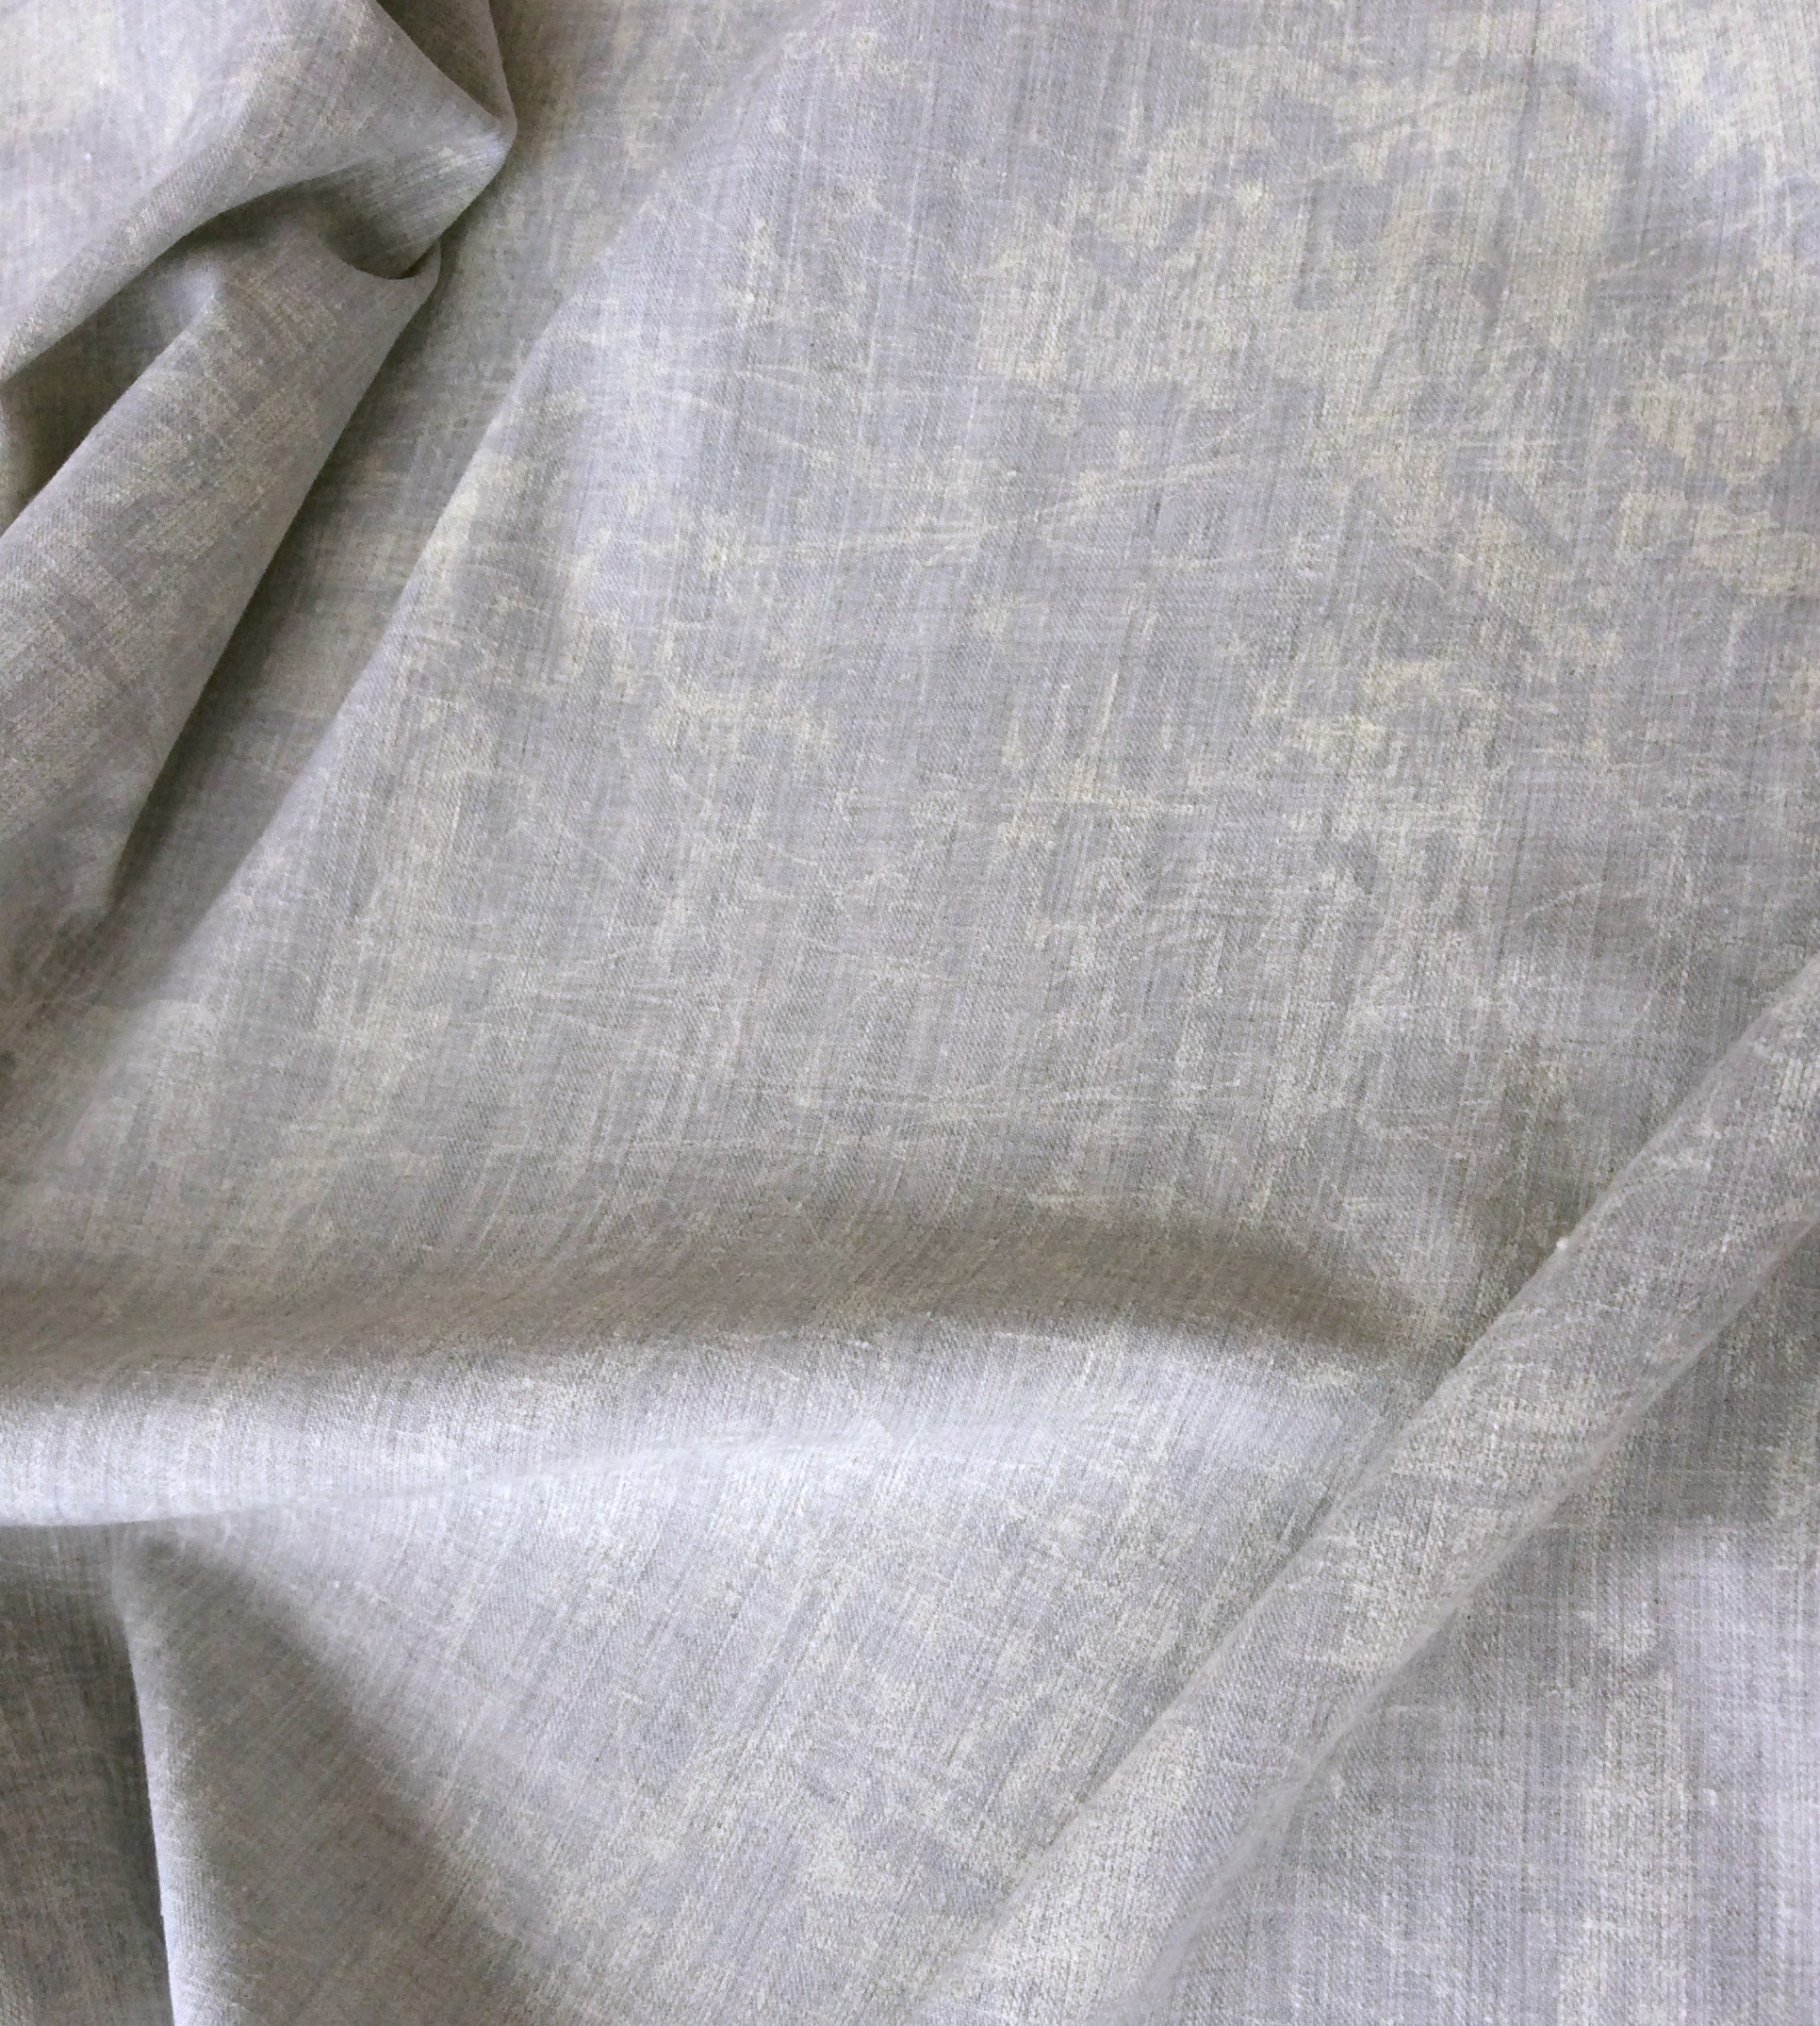 tissu polyester imprimé gris blanchi